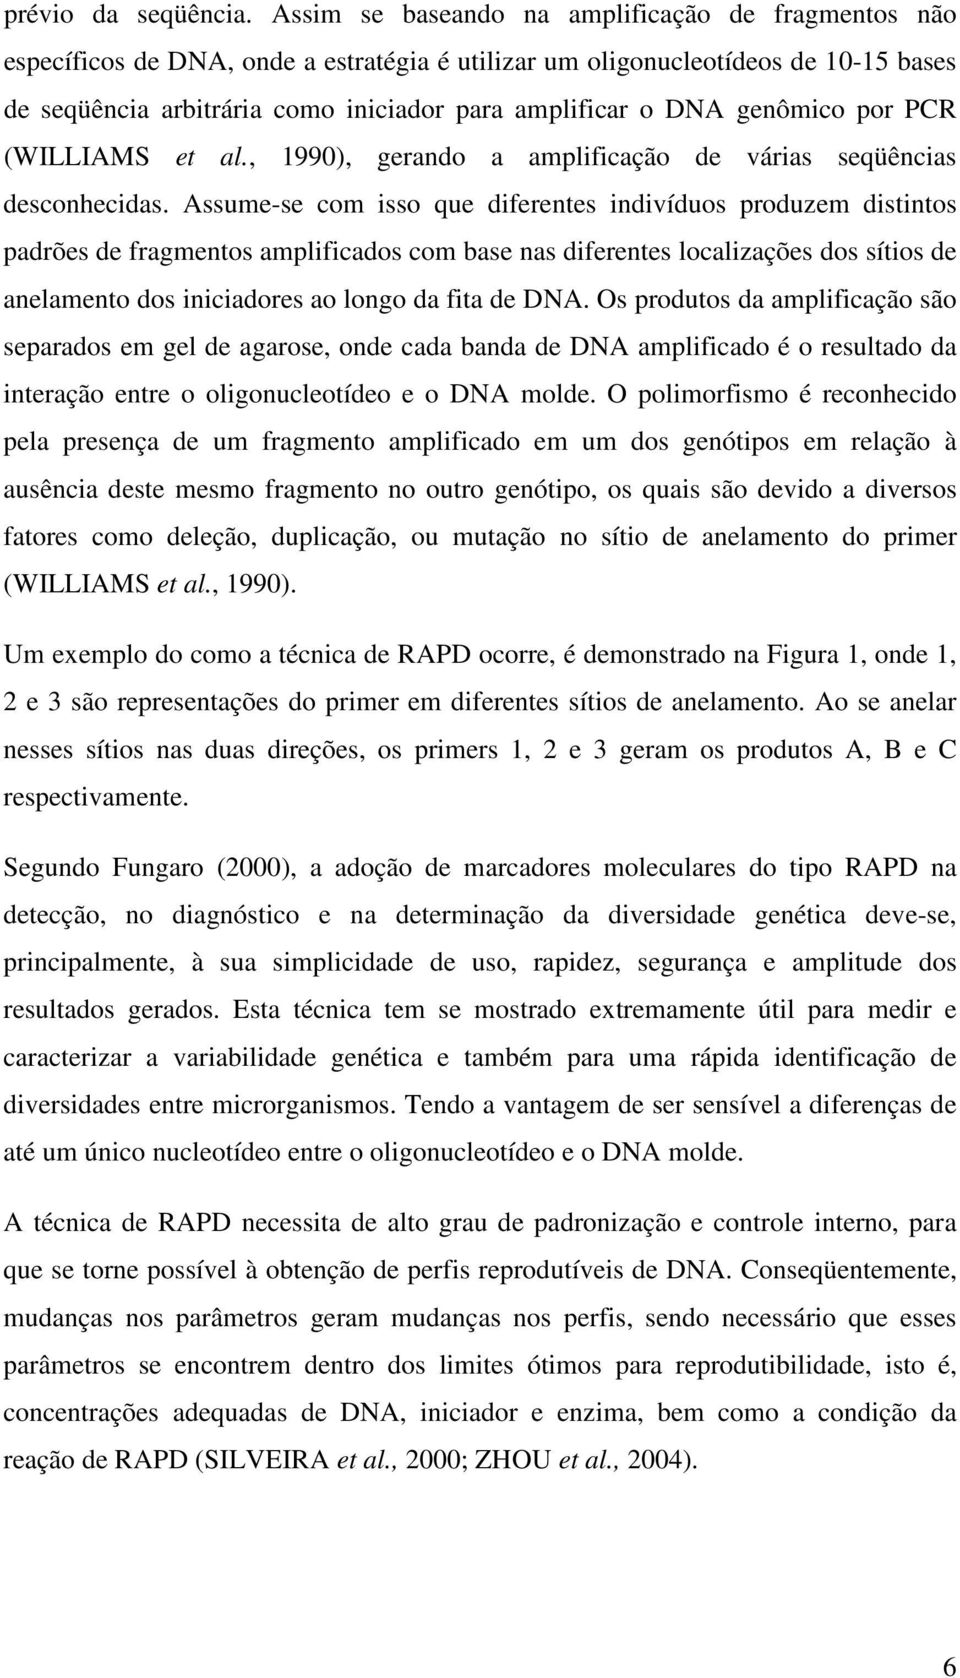 genômico por PCR (WILLIAMS et al., 1990), gerando a amplificação de várias seqüências desconhecidas.